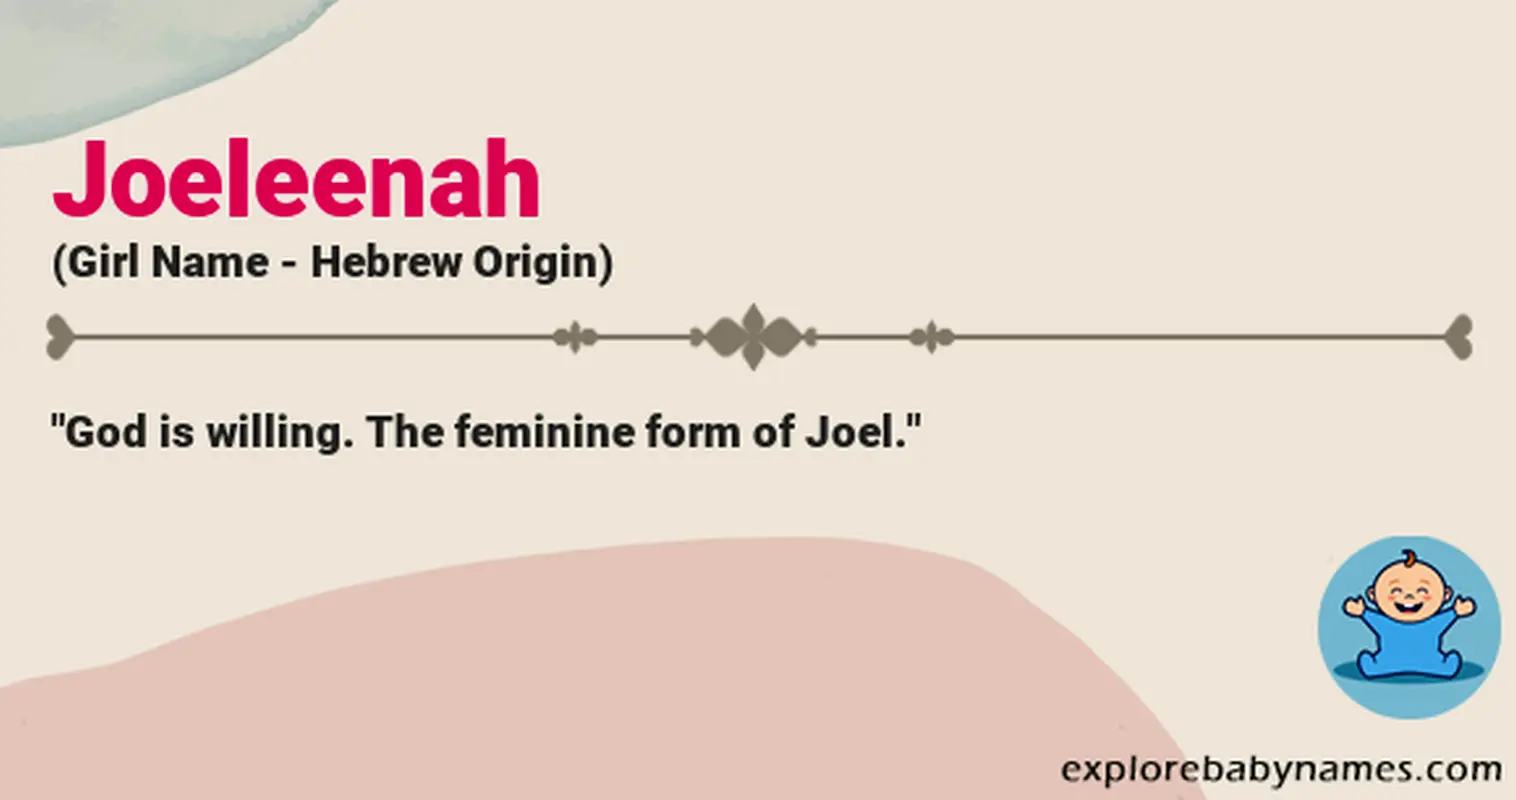 Meaning of Joeleenah